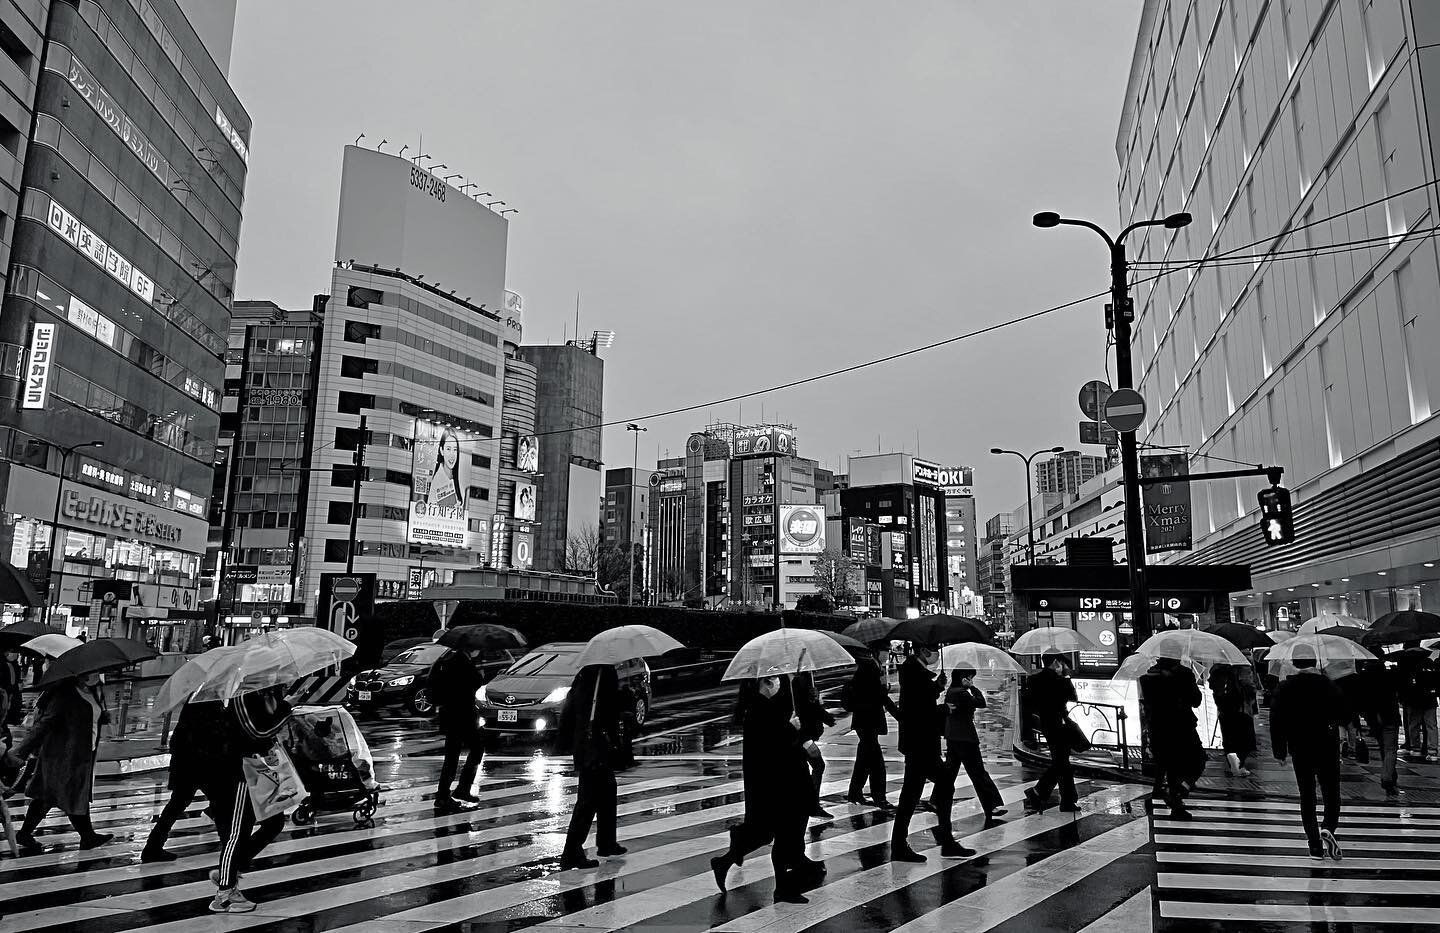 Rainy Tokyo 
#Tokyo #blackandwhite